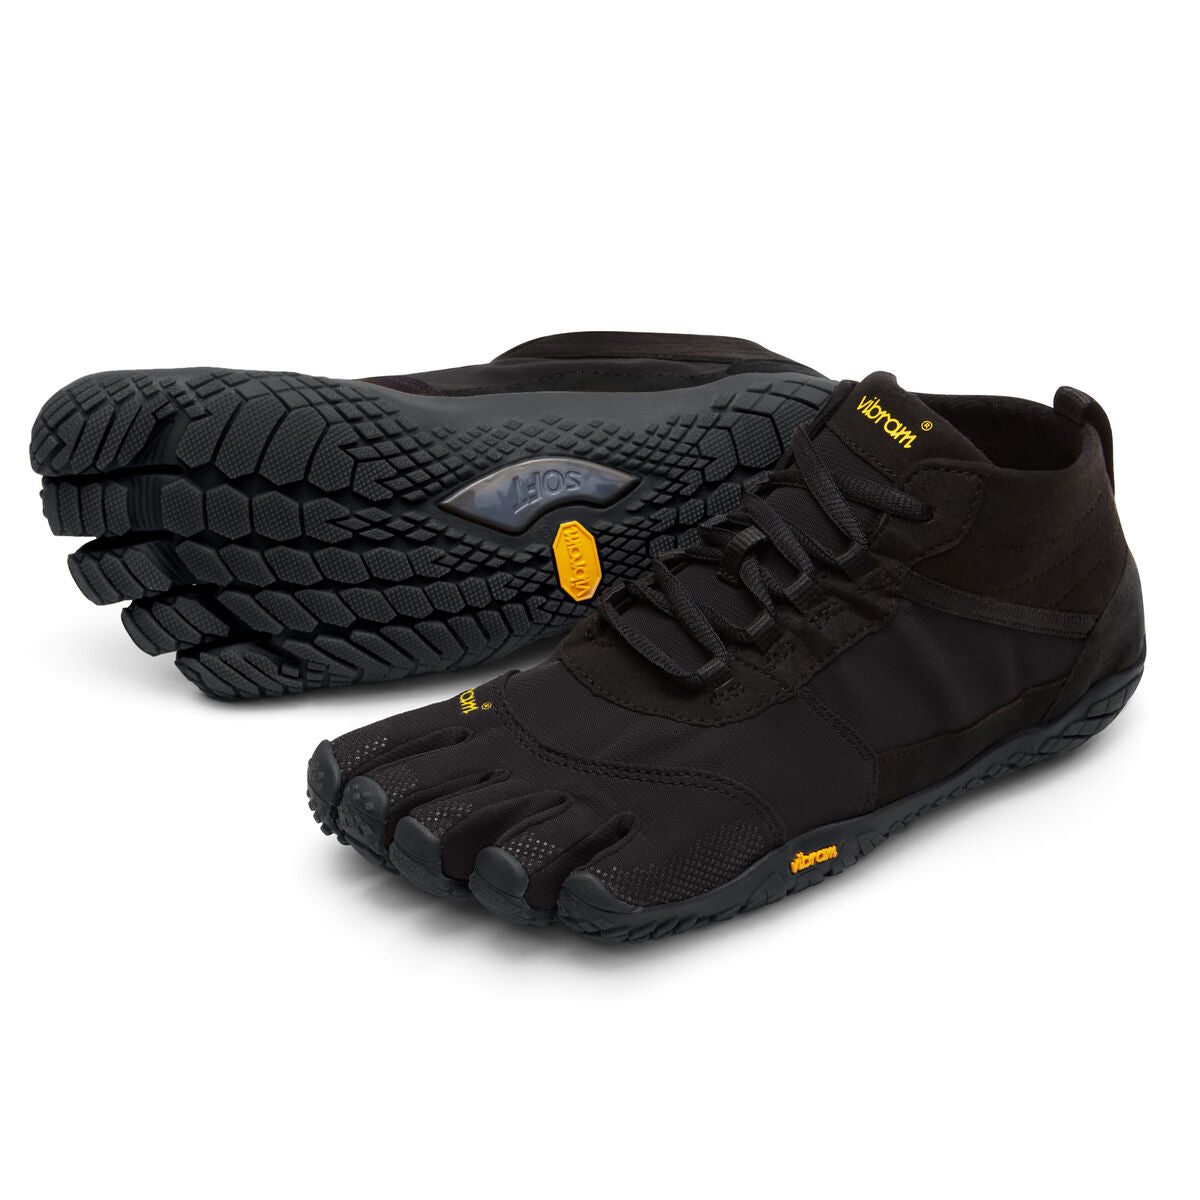 Women's Vibram Five Fingers V-Trek Hiking Shoe in Black/Black from the front